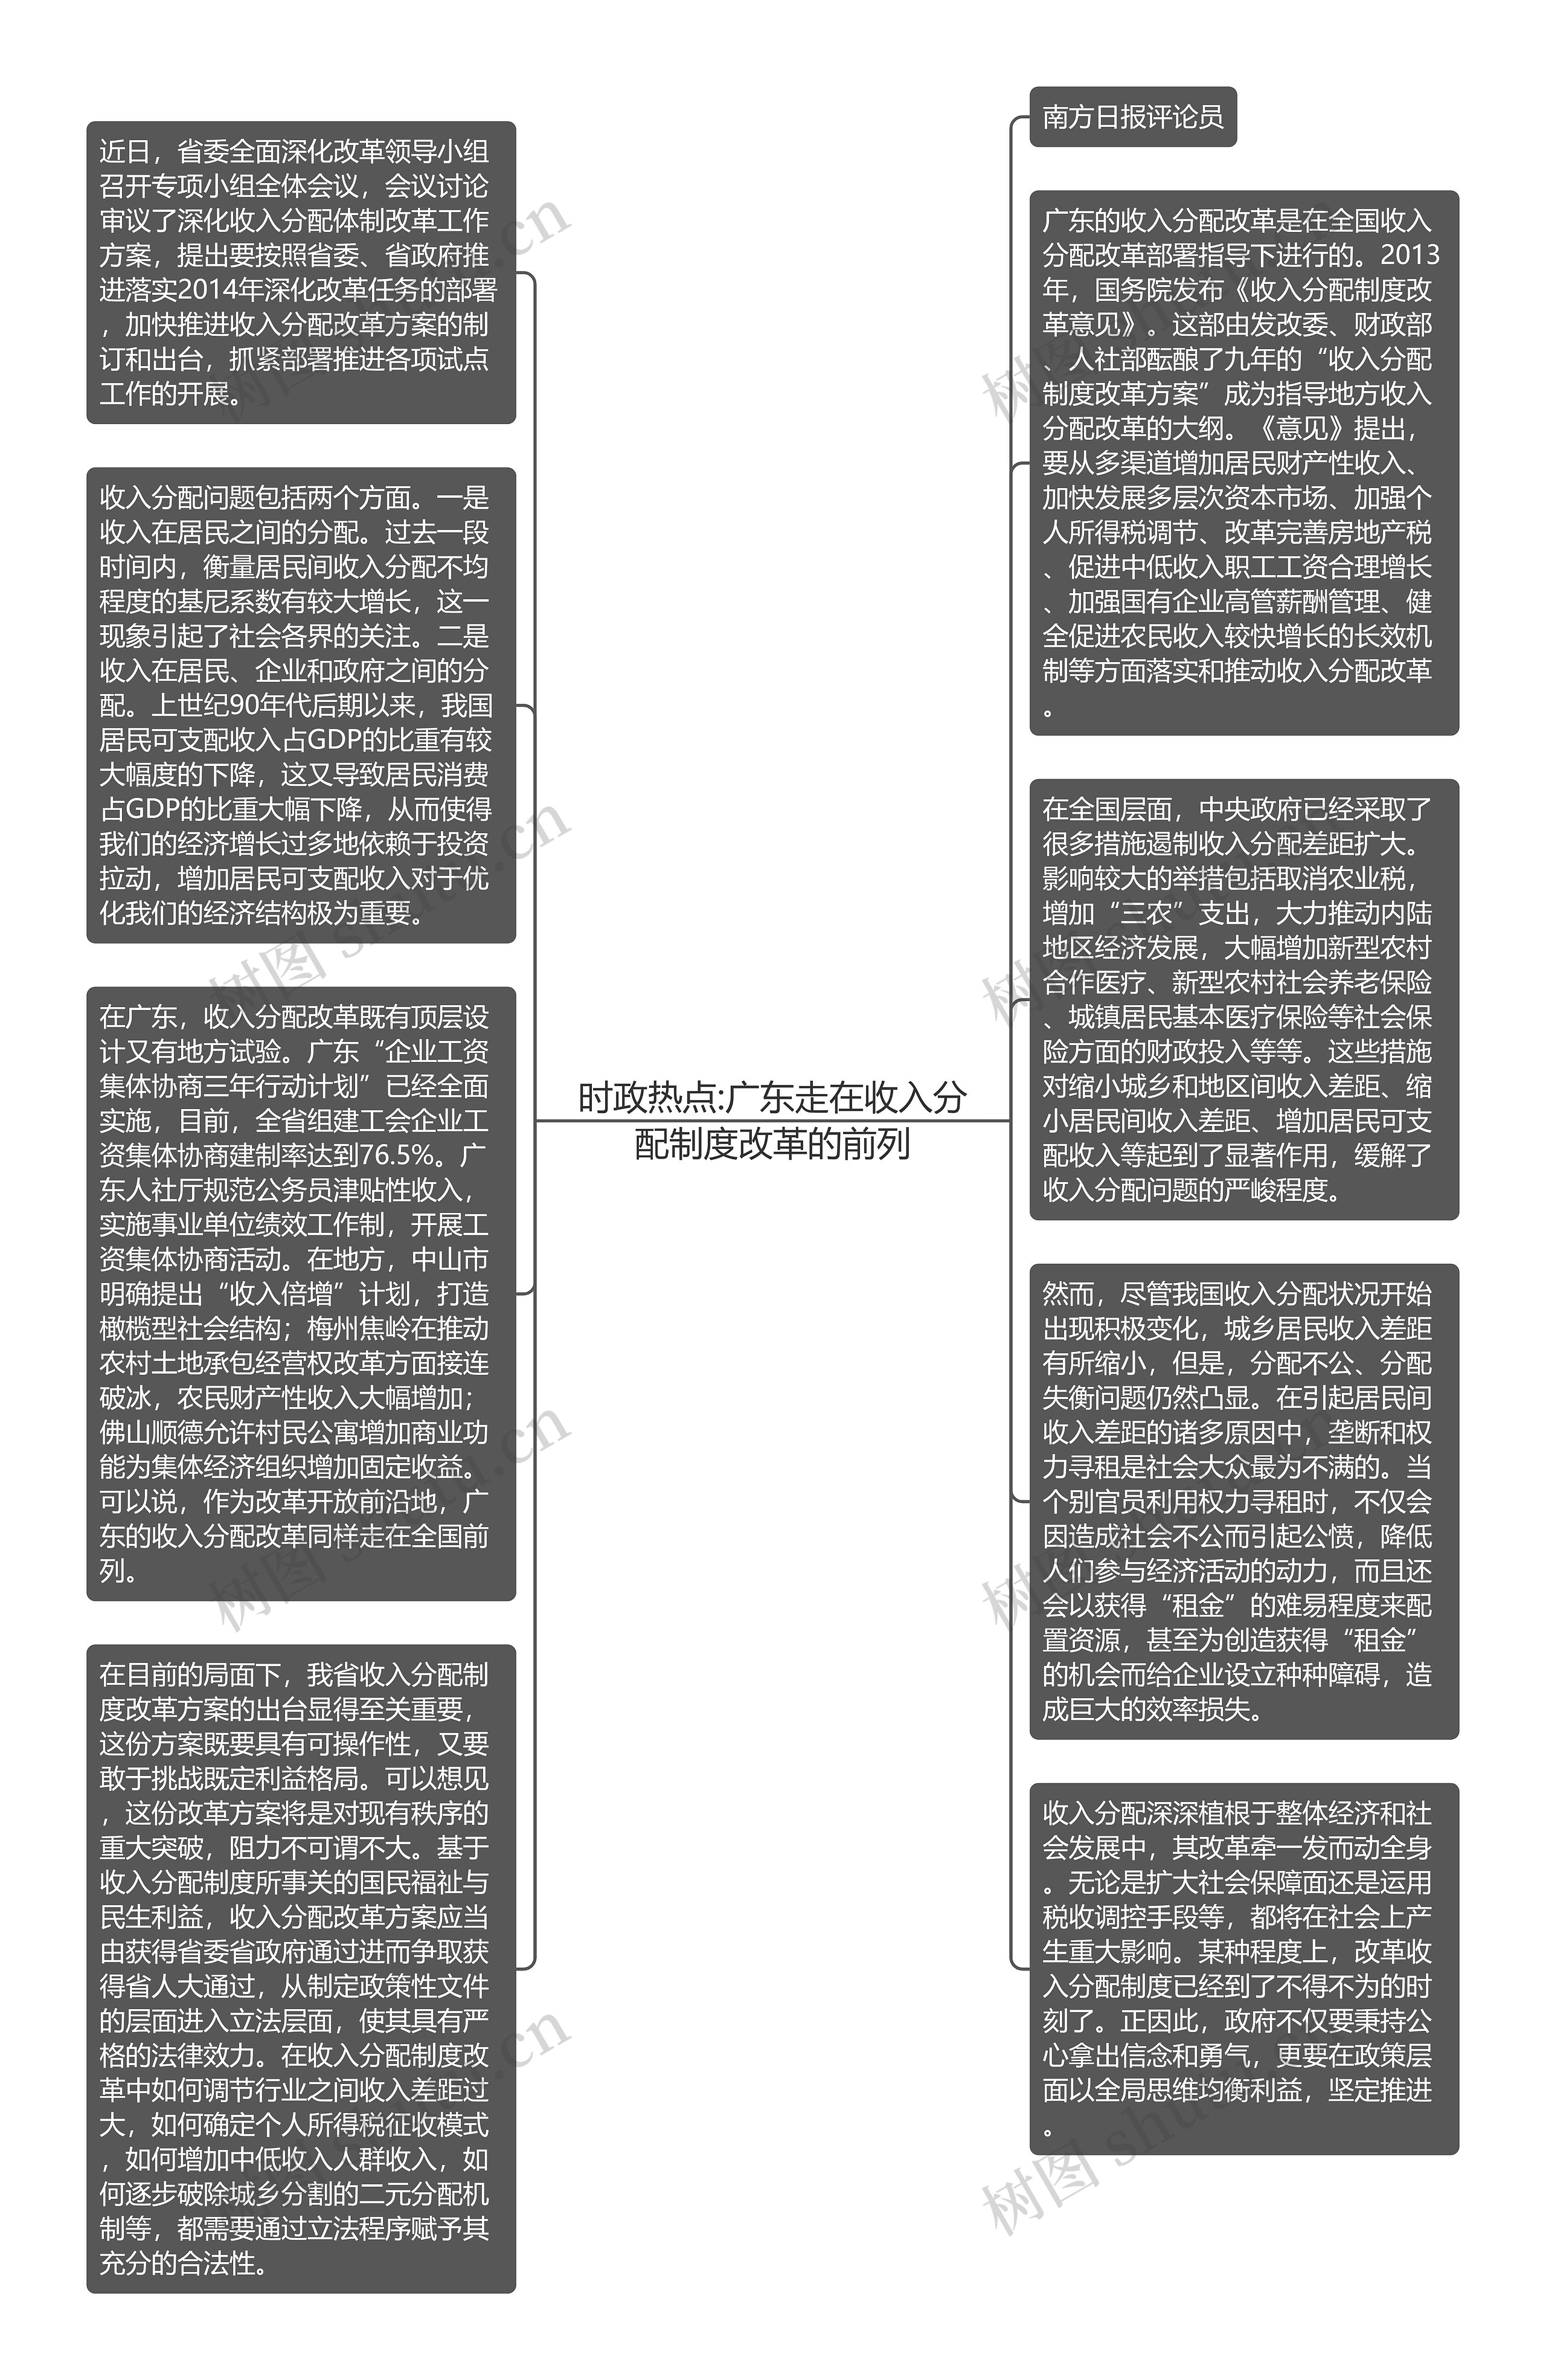 时政热点:广东走在收入分配制度改革的前列思维导图